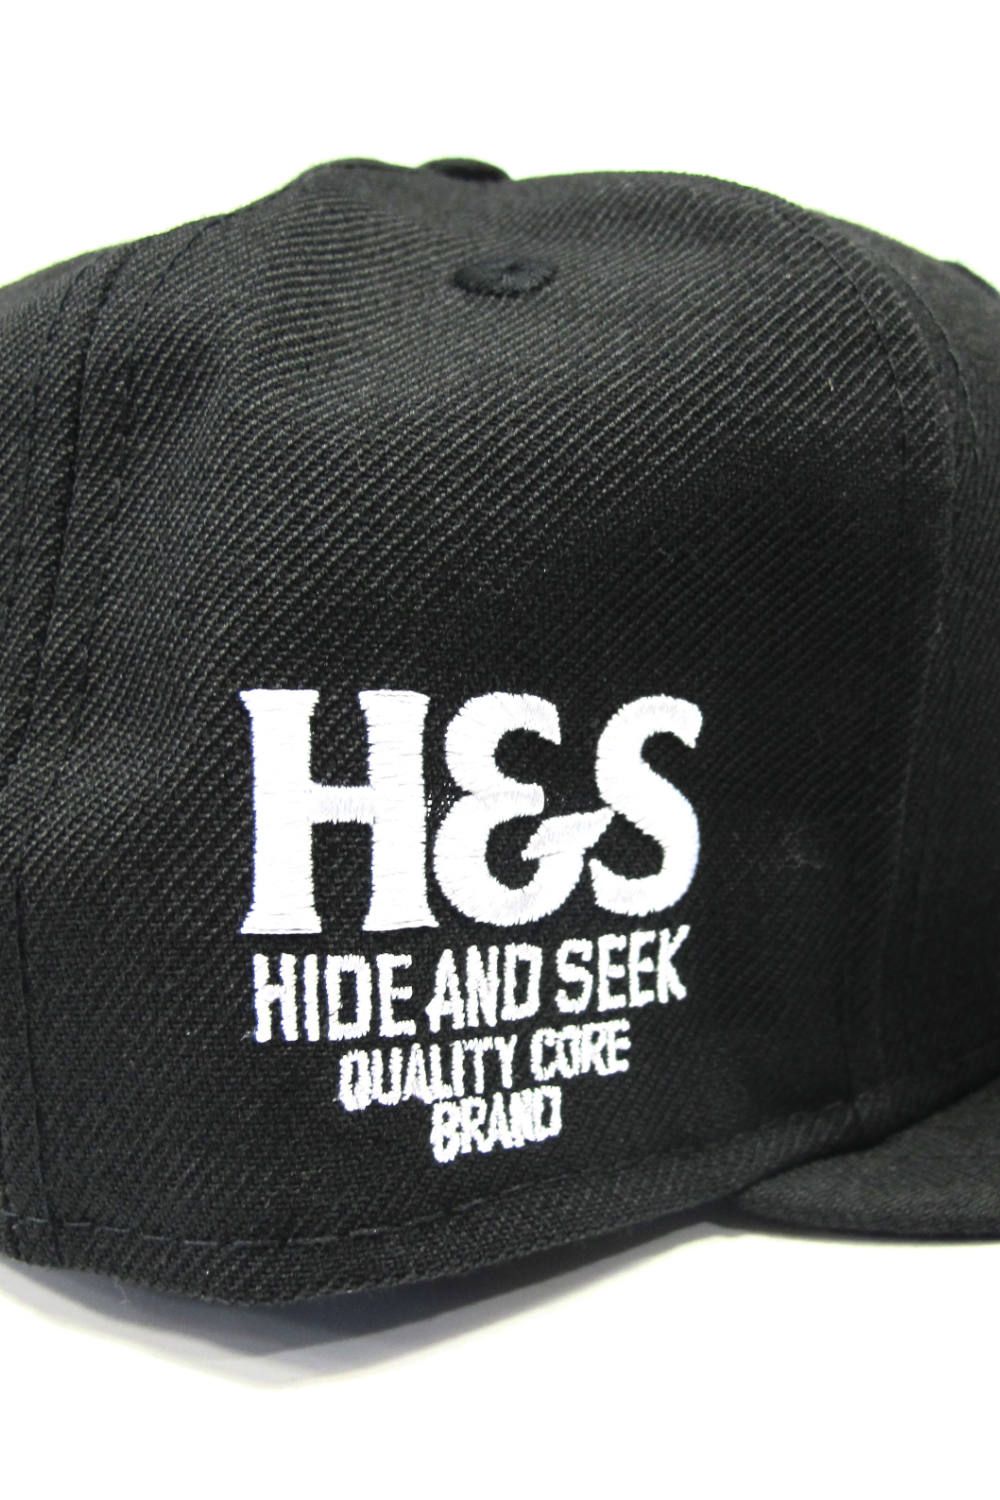 HIDE AND SEEK - ×NEWERA / LOS ANGELES DODGERS CAP (BLACK 